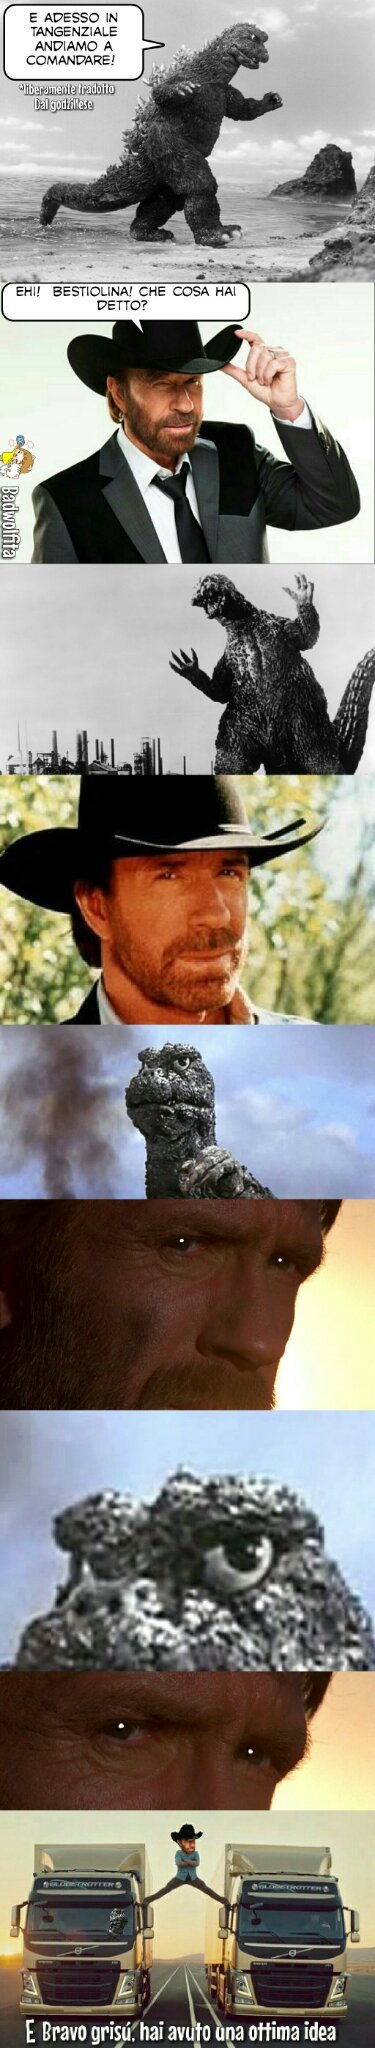 Chuck Norris Vs Godzilla: in tangenziale andiamo a comandare - meme